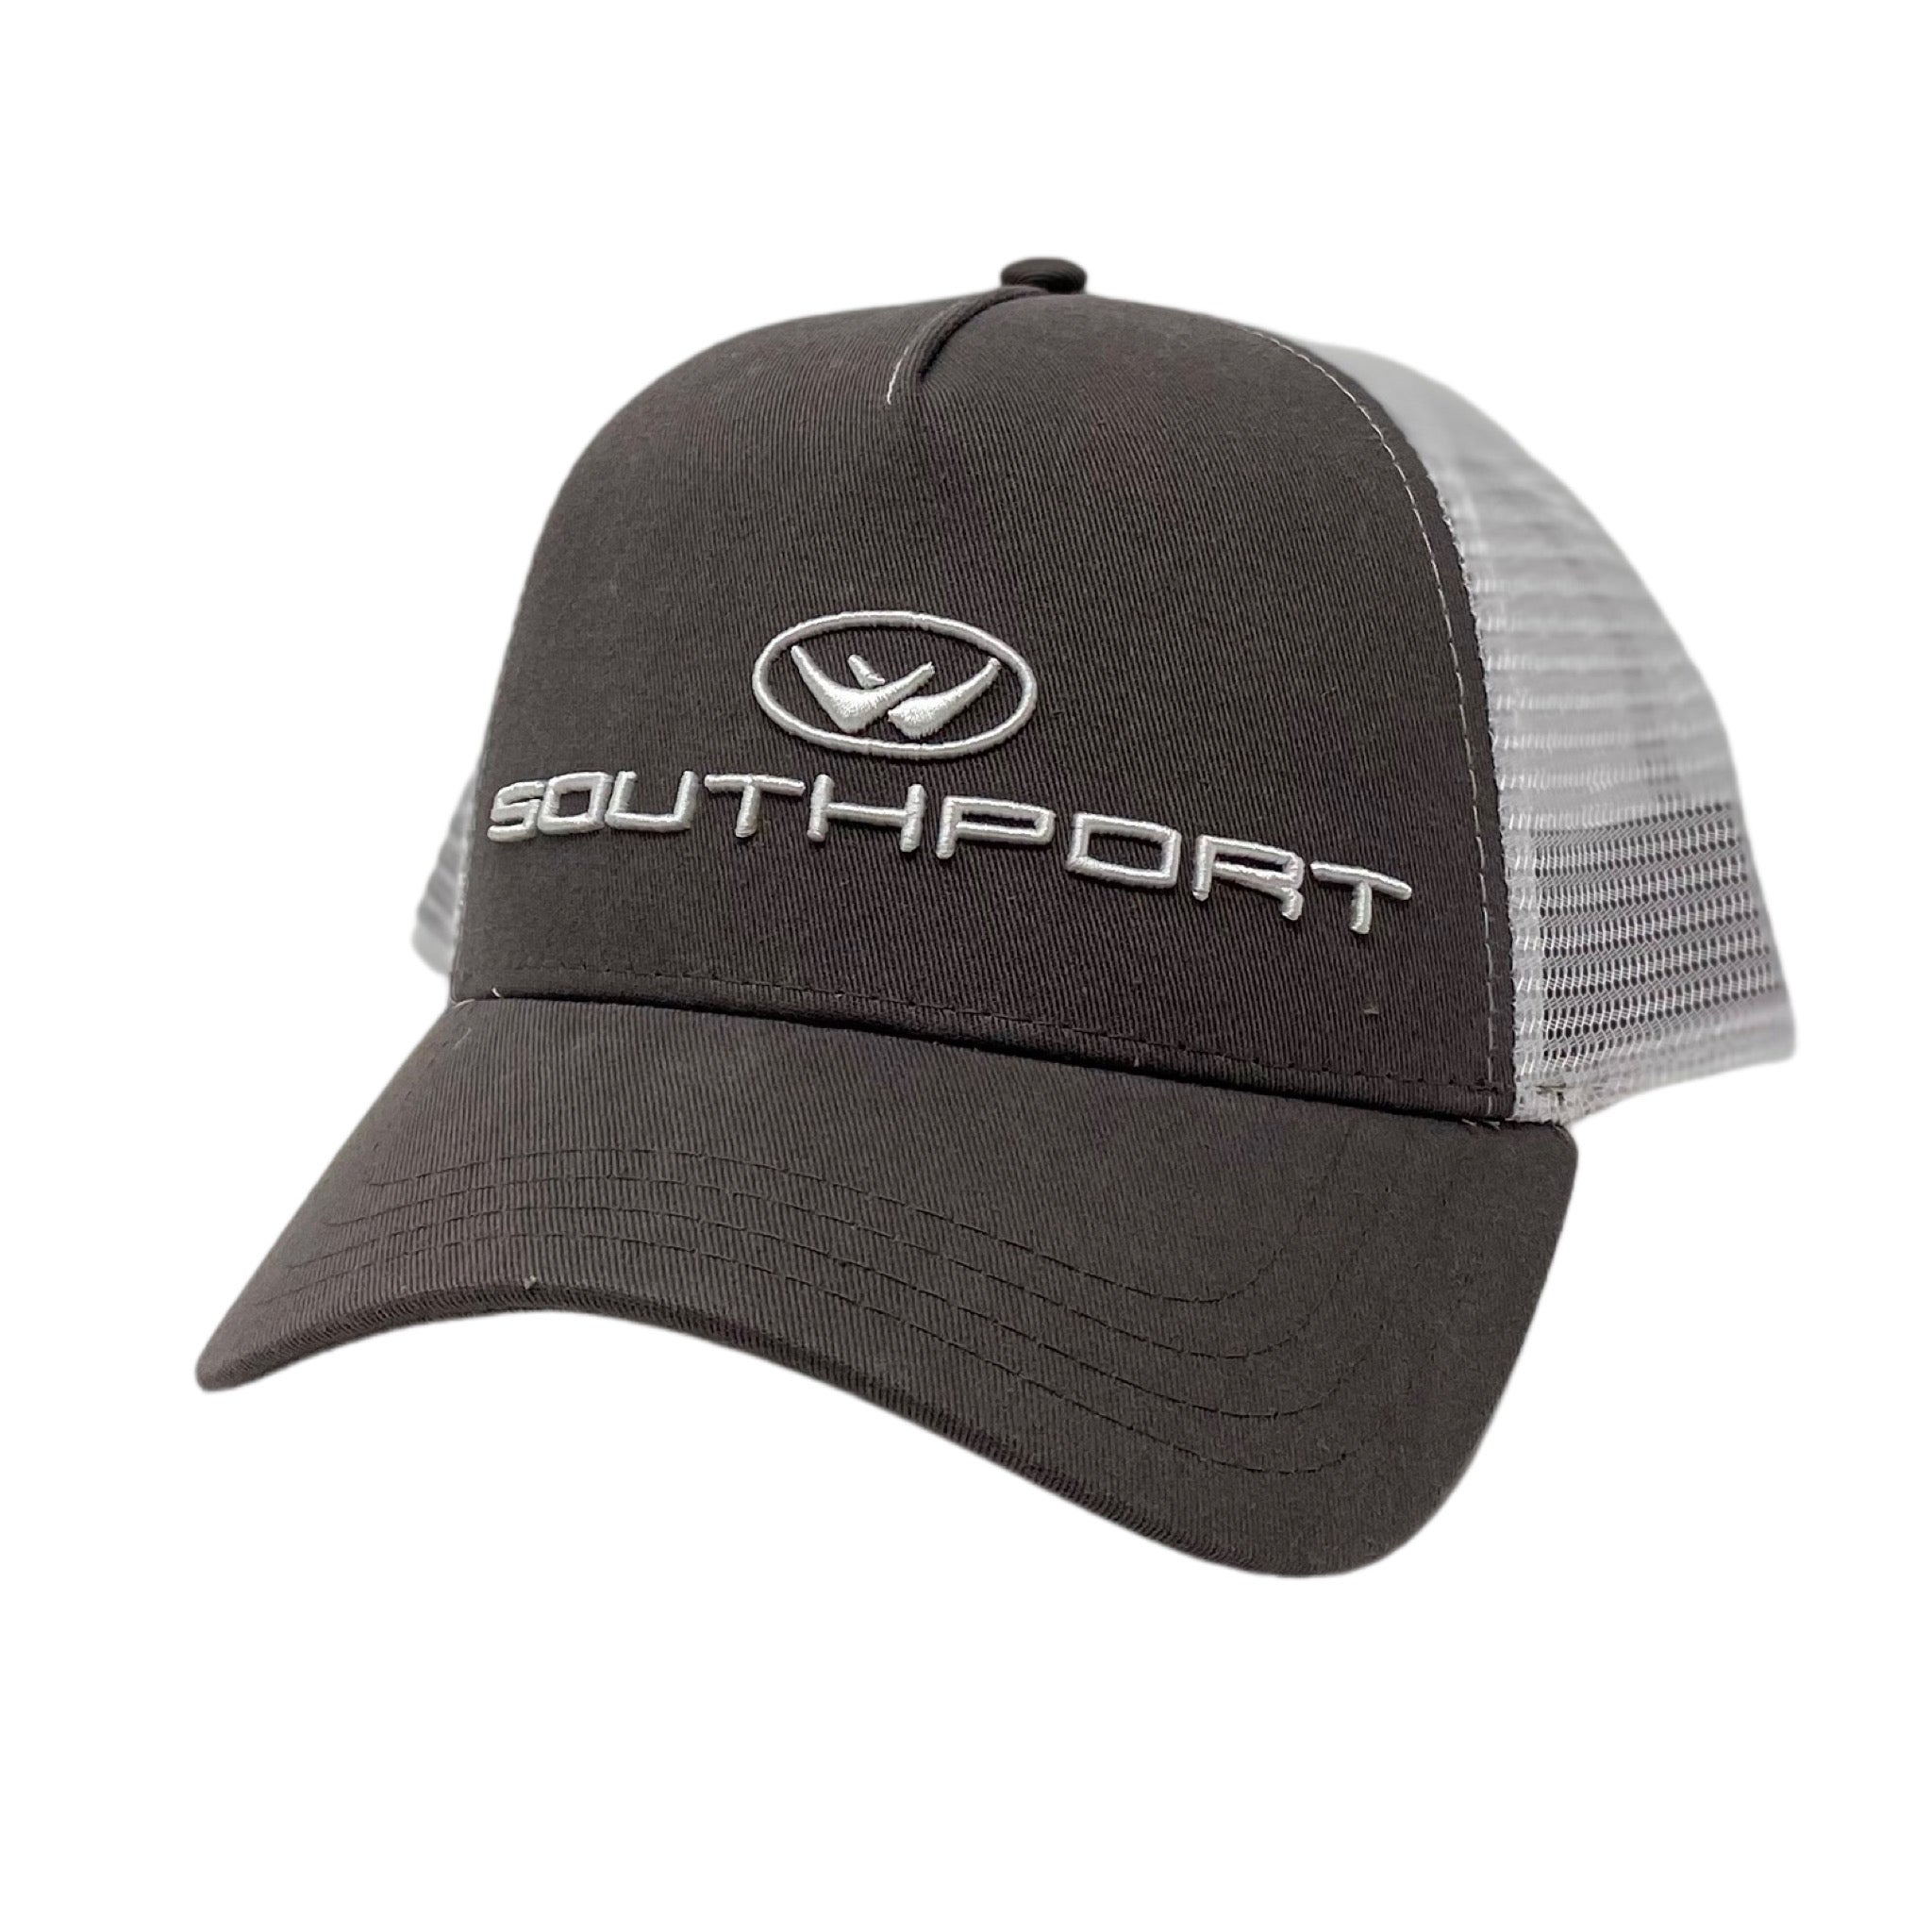 Southport Boats Custom Hats Os / Royal